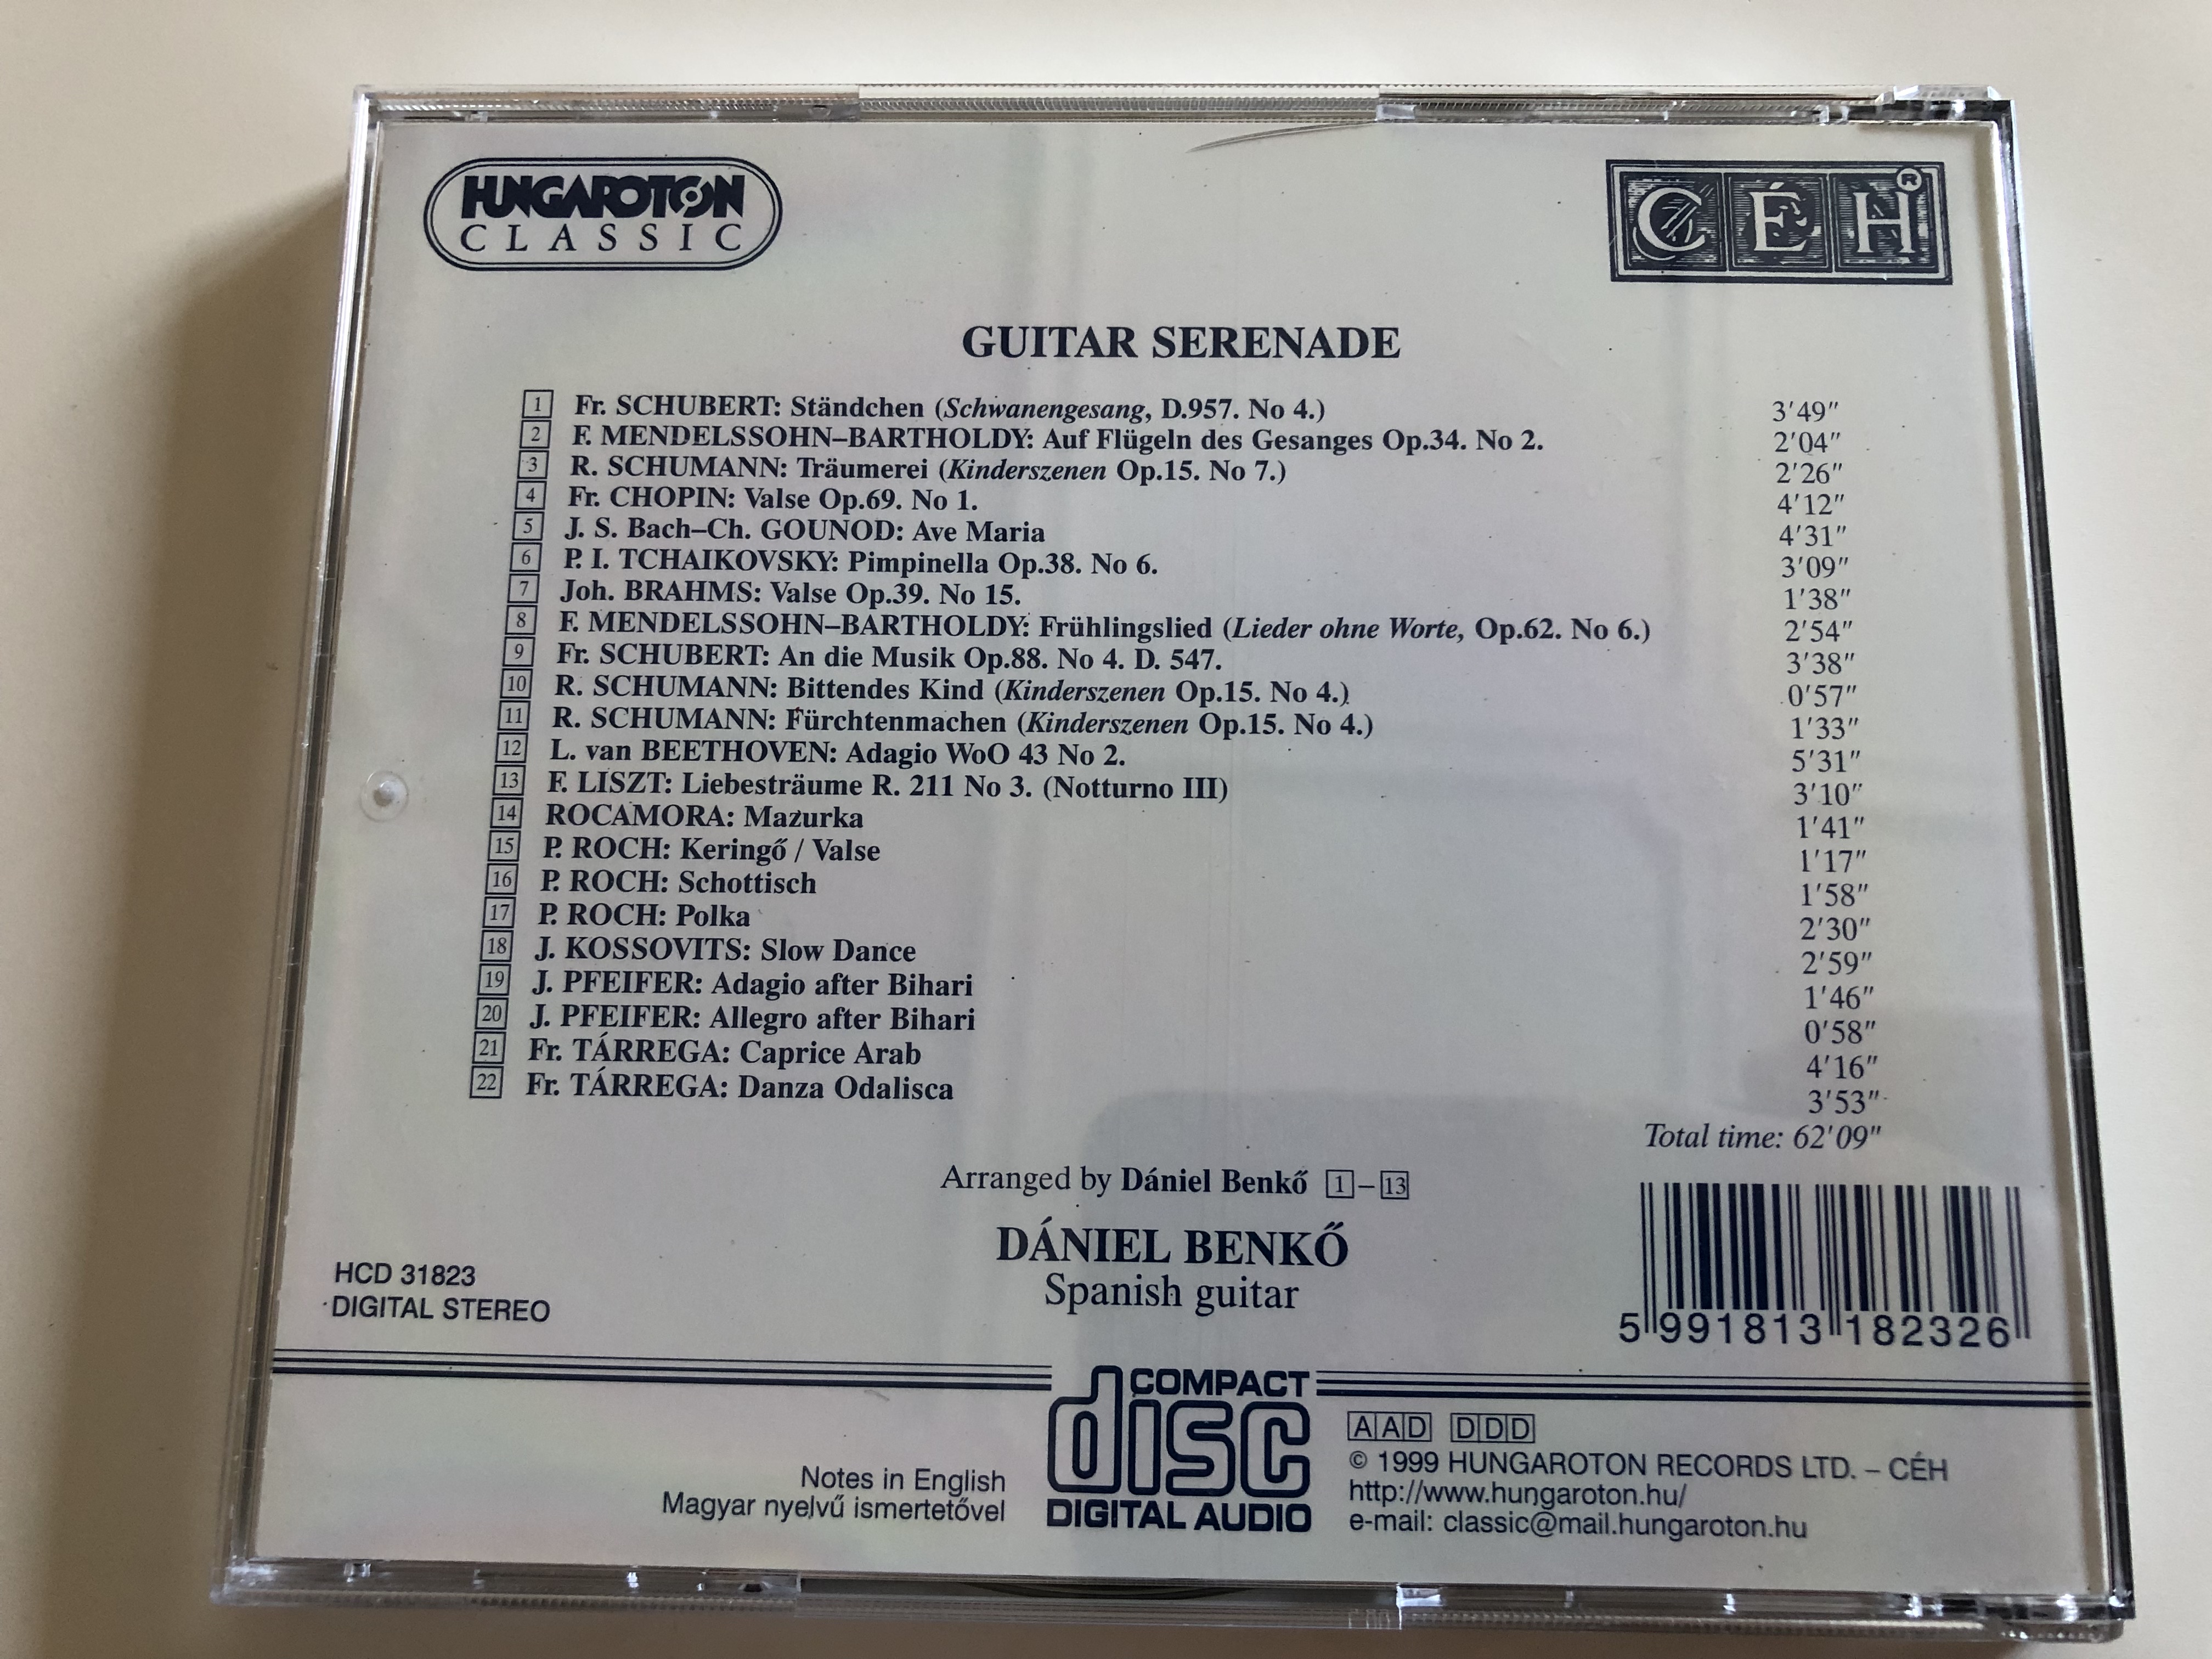 d-niel-benk-guitar-serenade-spanish-guitar-audio-cd-1999-schubert-mendelssohn-chopin-schumann-bach-tchaikovsky-liszt-roch-pfeifer-t-rrega-hungaroton-classic-hcd-31823-6-.jpg